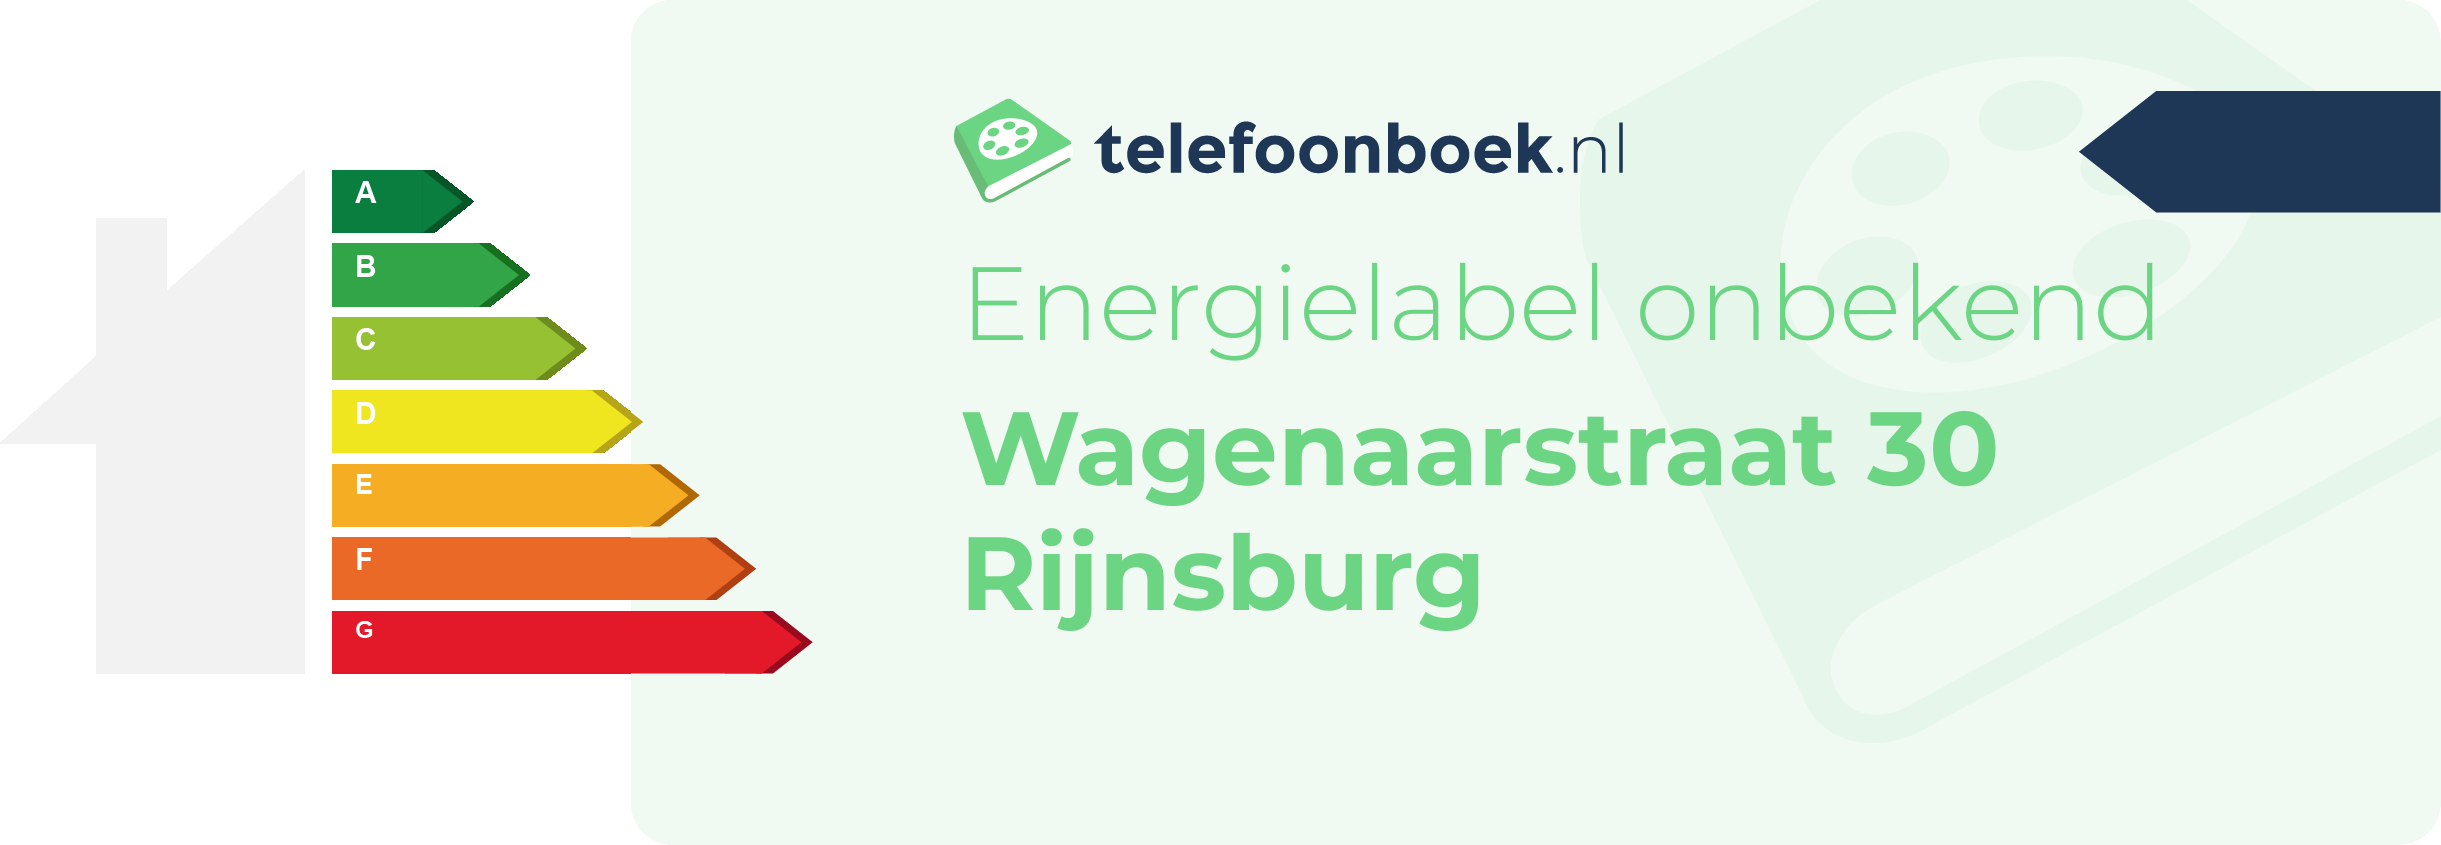 Energielabel Wagenaarstraat 30 Rijnsburg